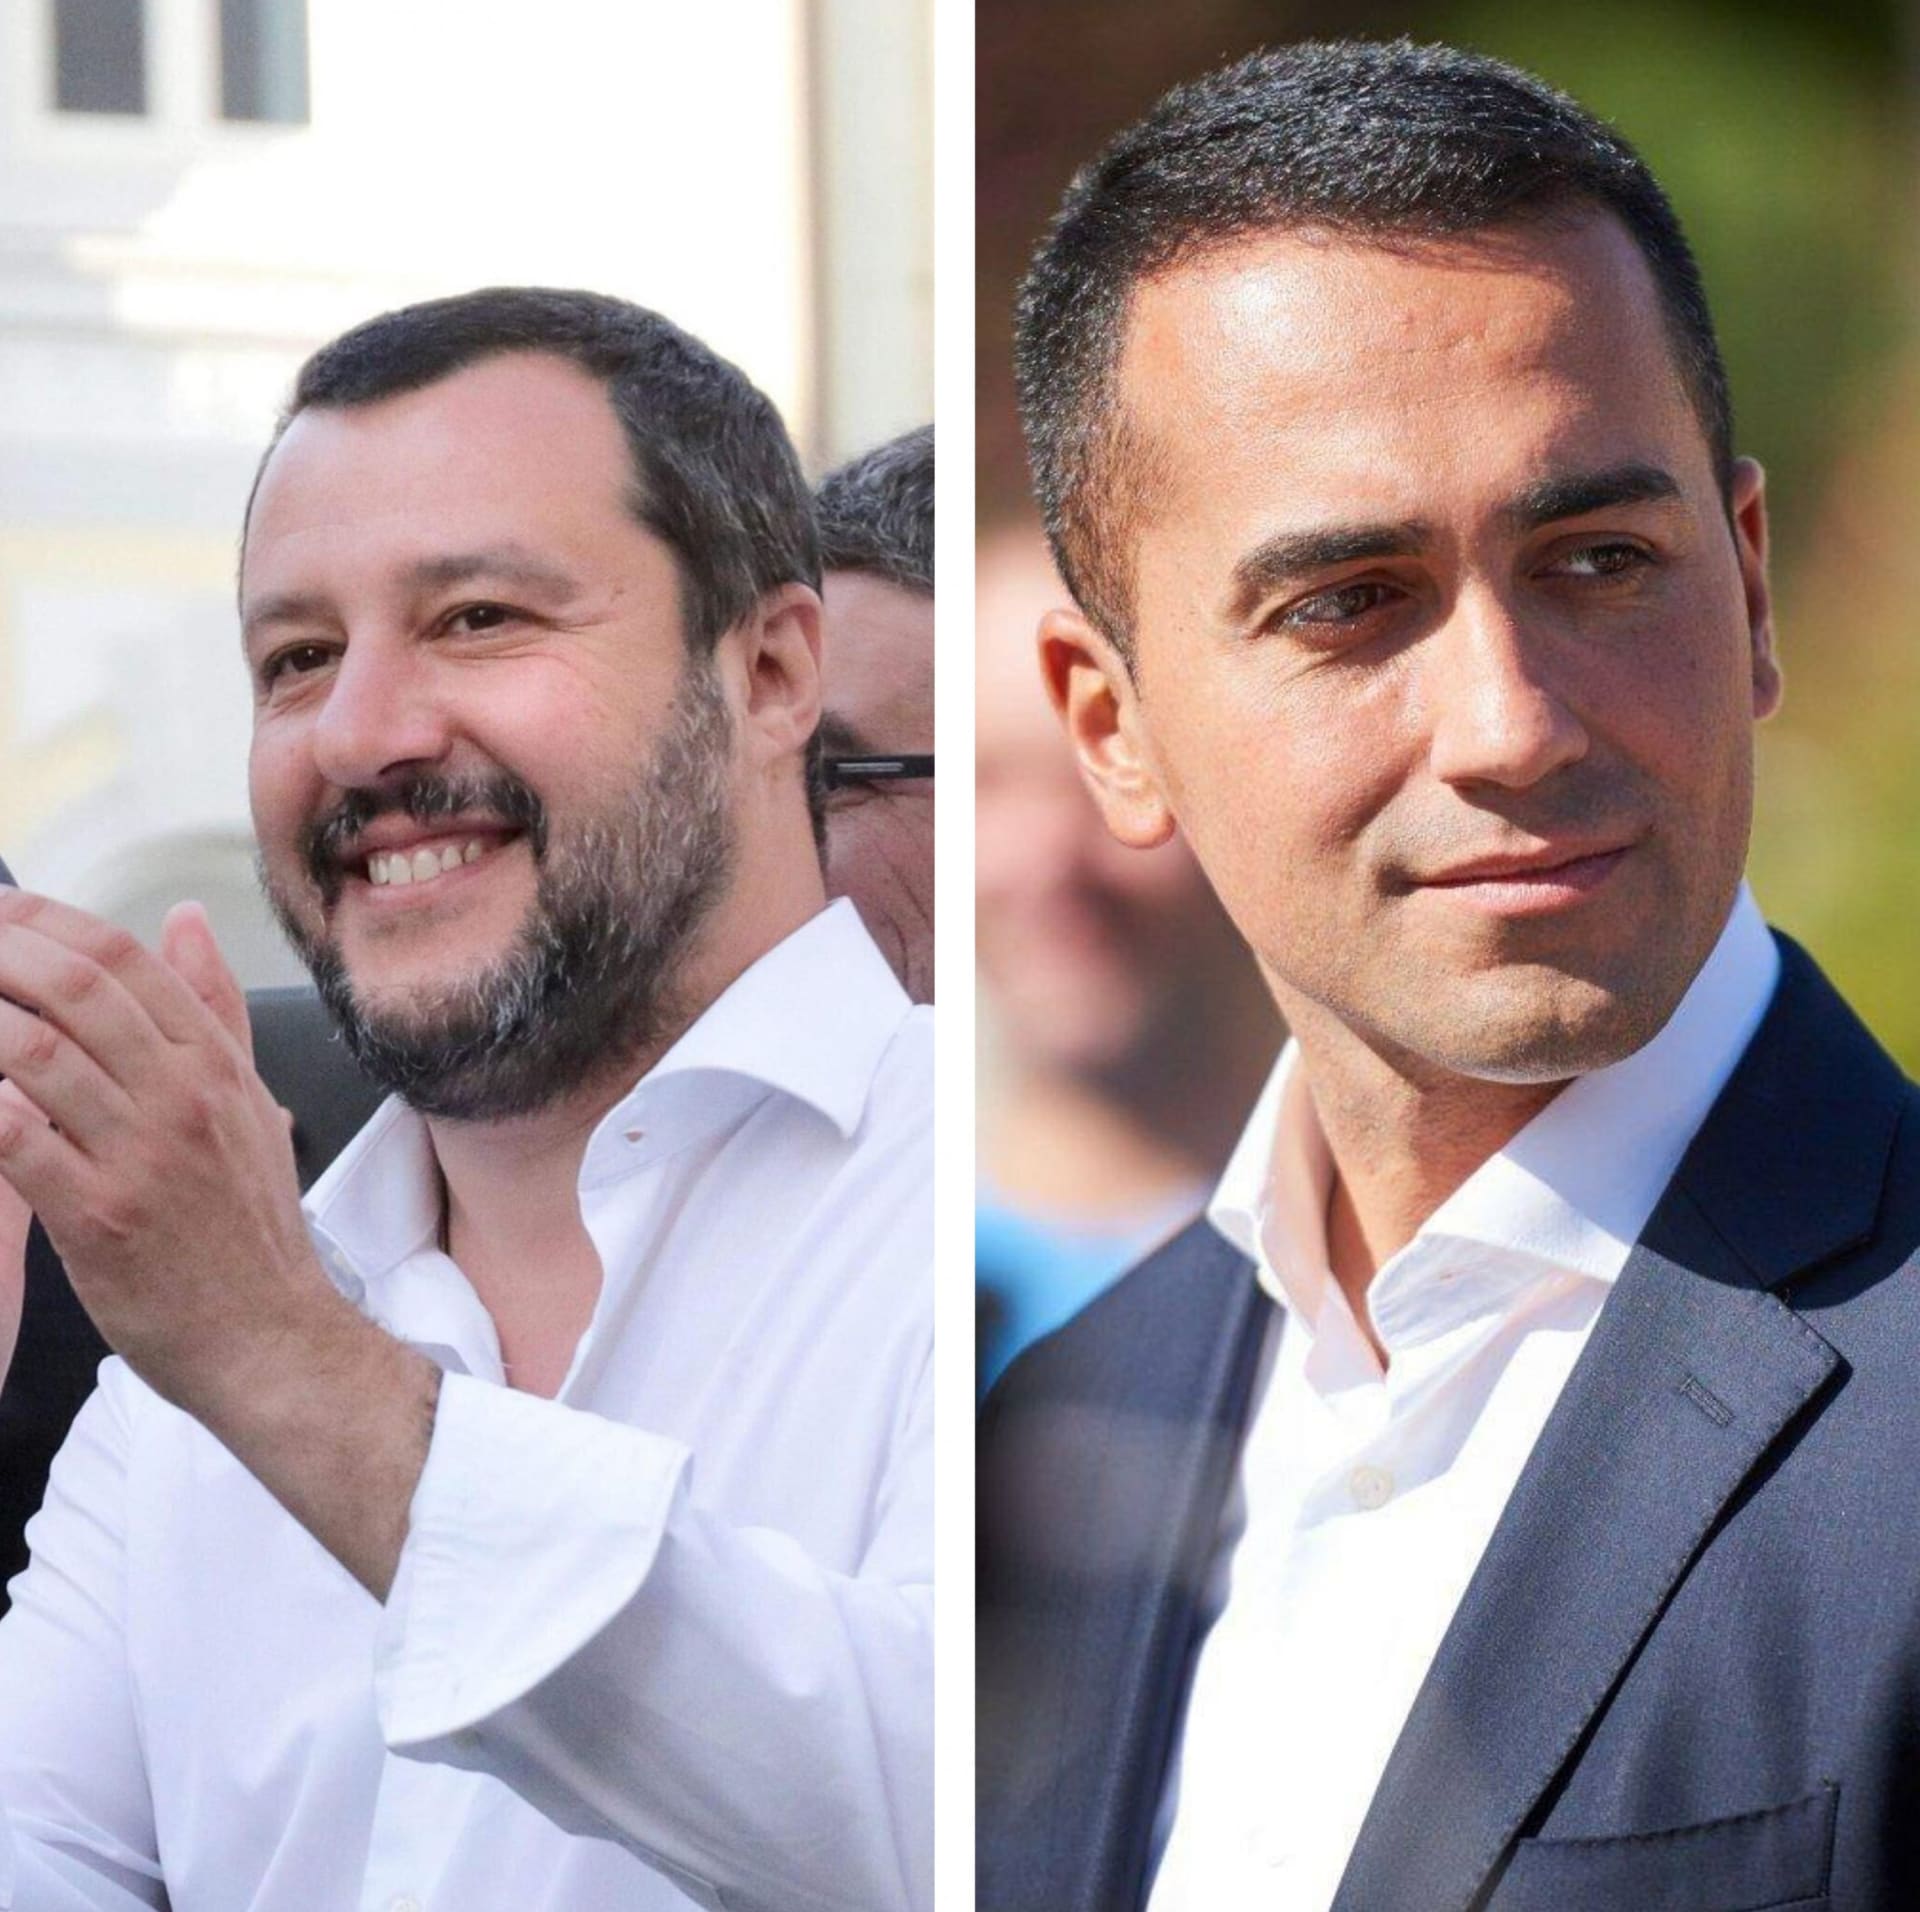 Šéf Ligy Matteo Salvini (vlevo) a předseda Hnutí pěti hvězd Luigi Di Maio (vpravo)